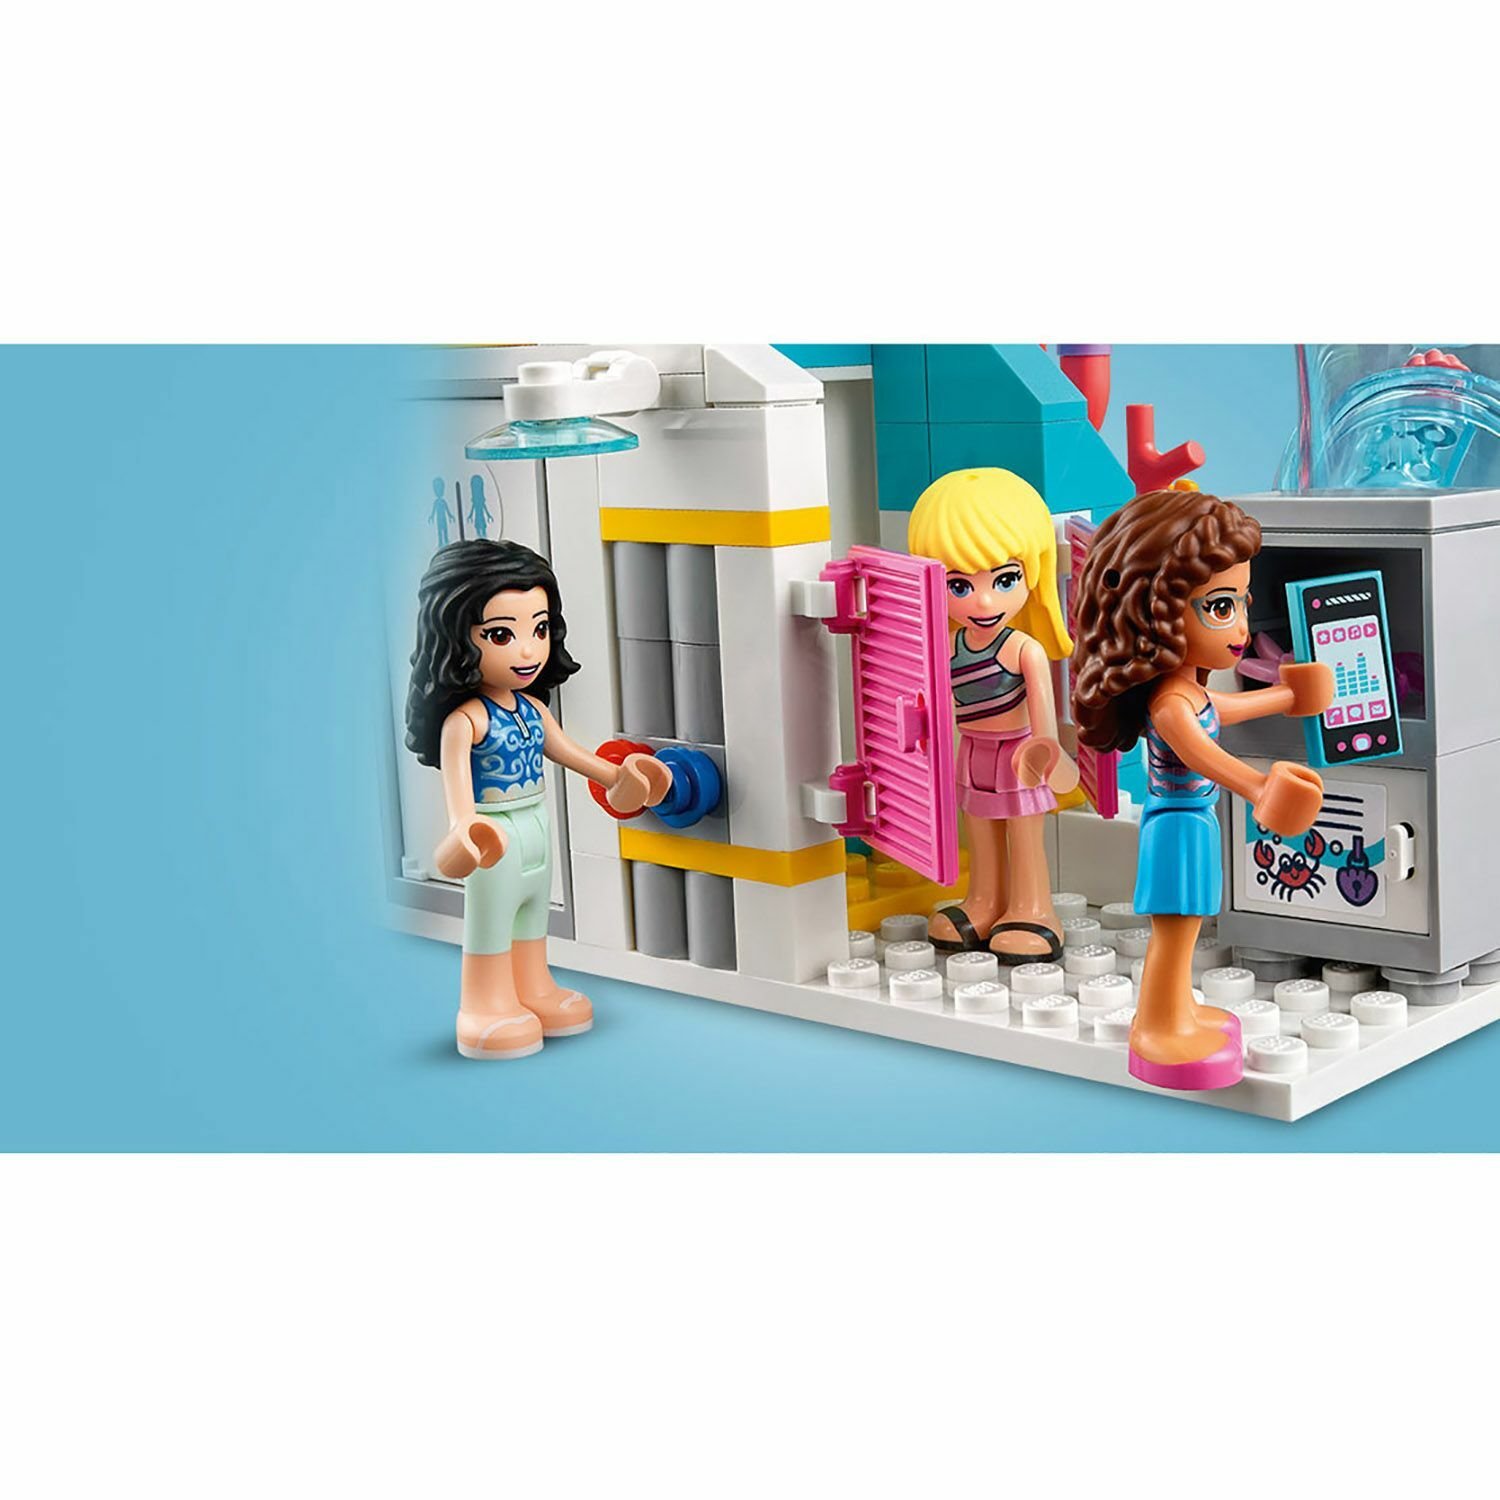 Lego Friends 41430 Летний аквапарк